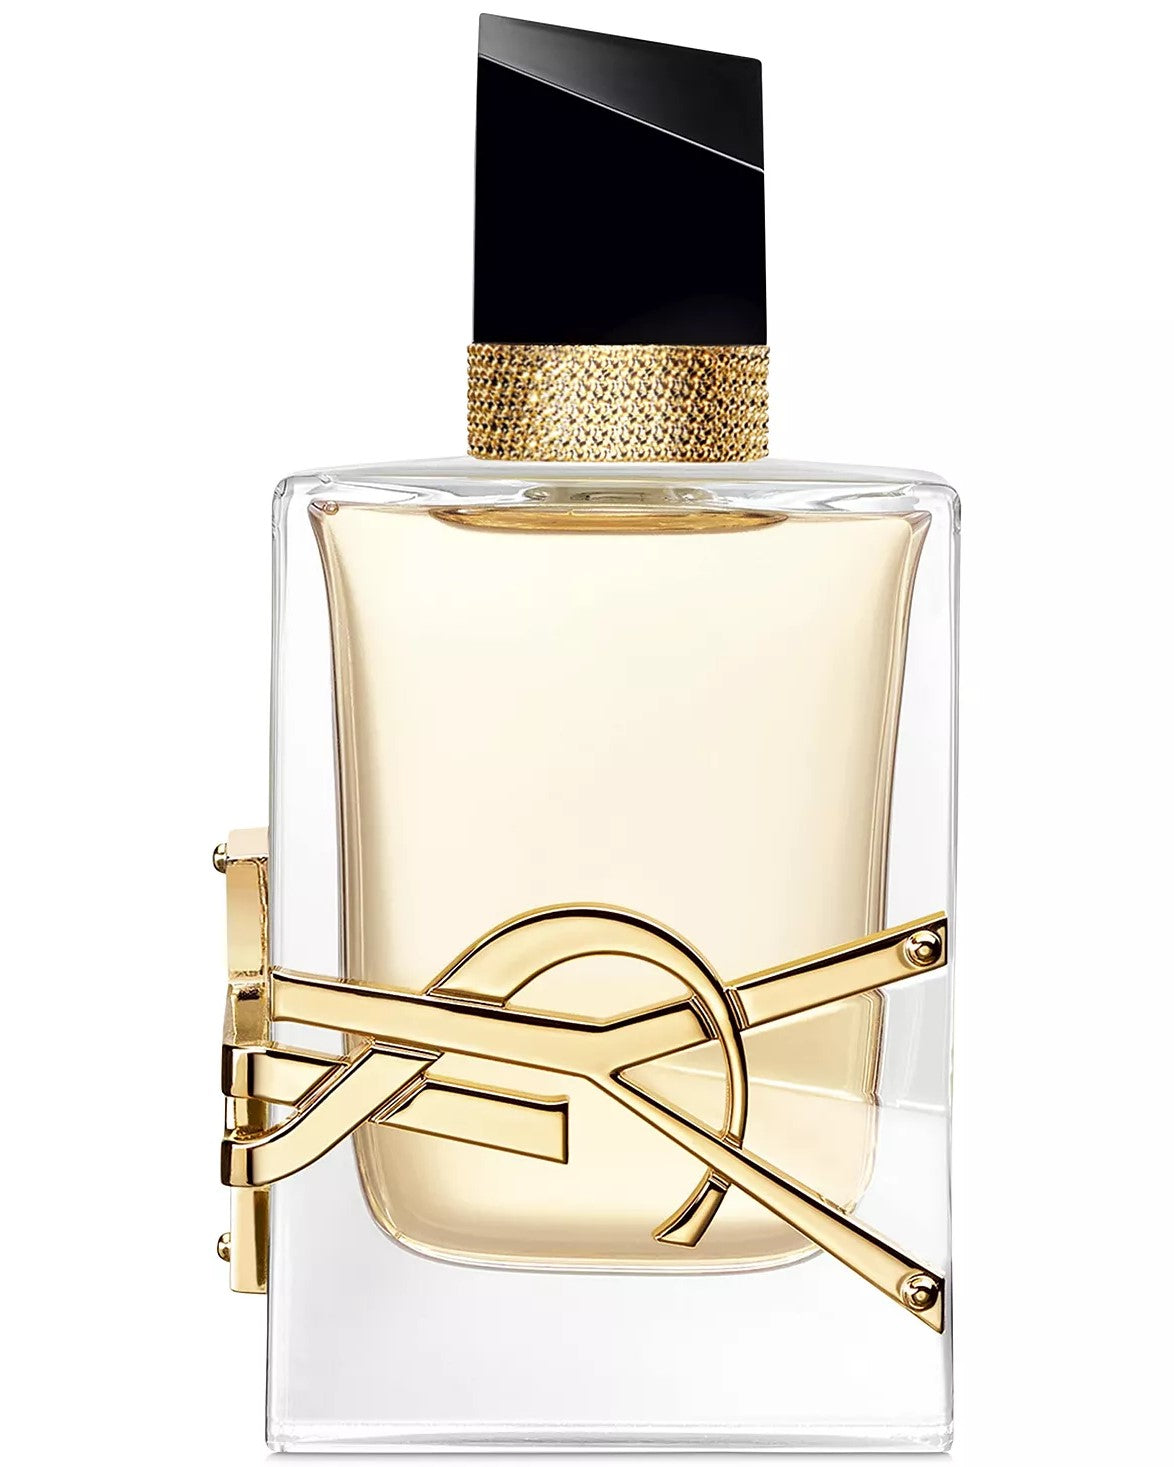 2-Pc. Libre Eau de Parfum Gift Set